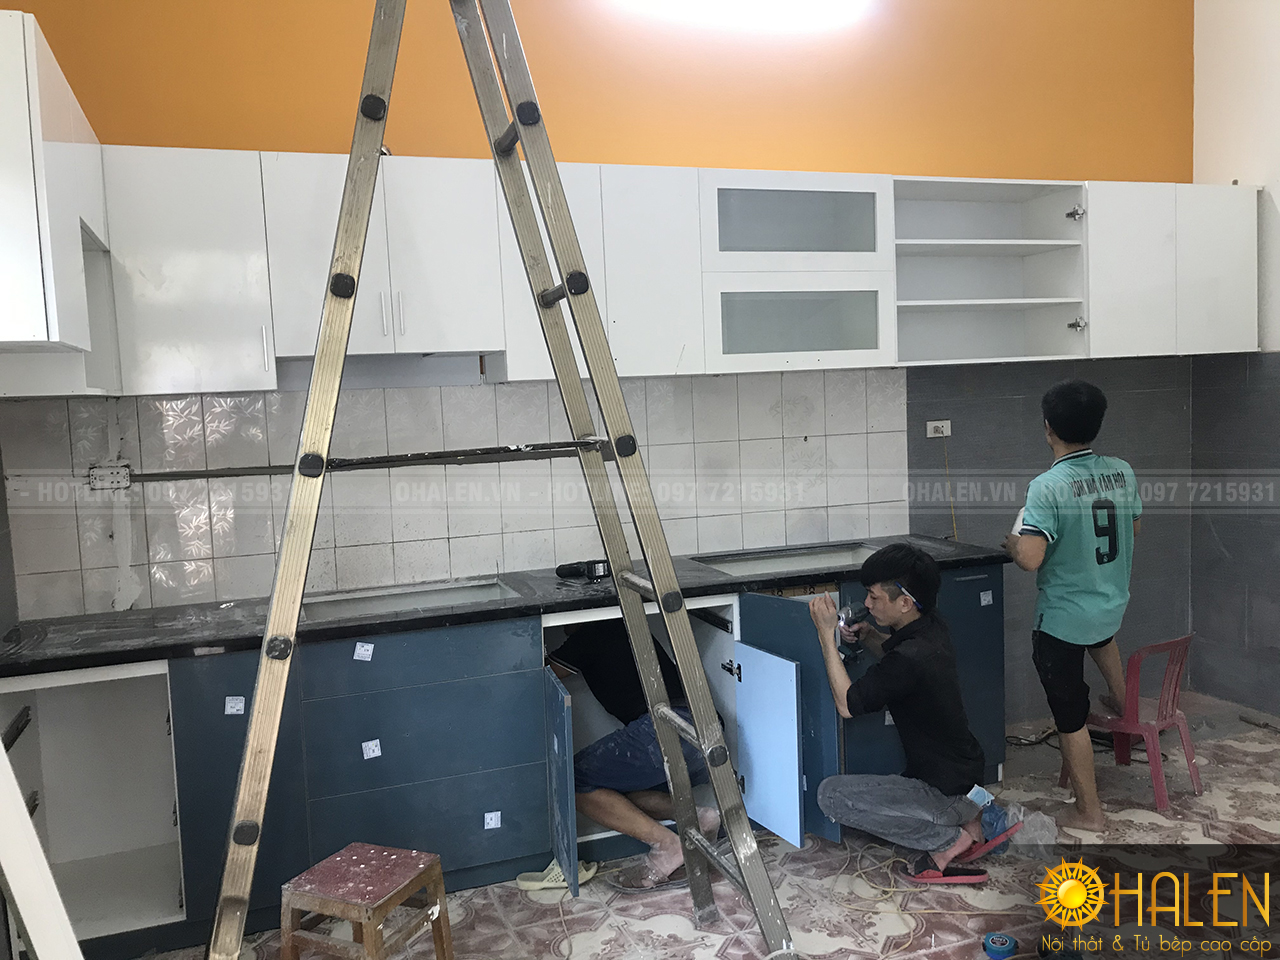 Đội ngũ thợ thi công vẫn đang miệt mài lắp đặt tủ bếp cho gia đình chị Chung